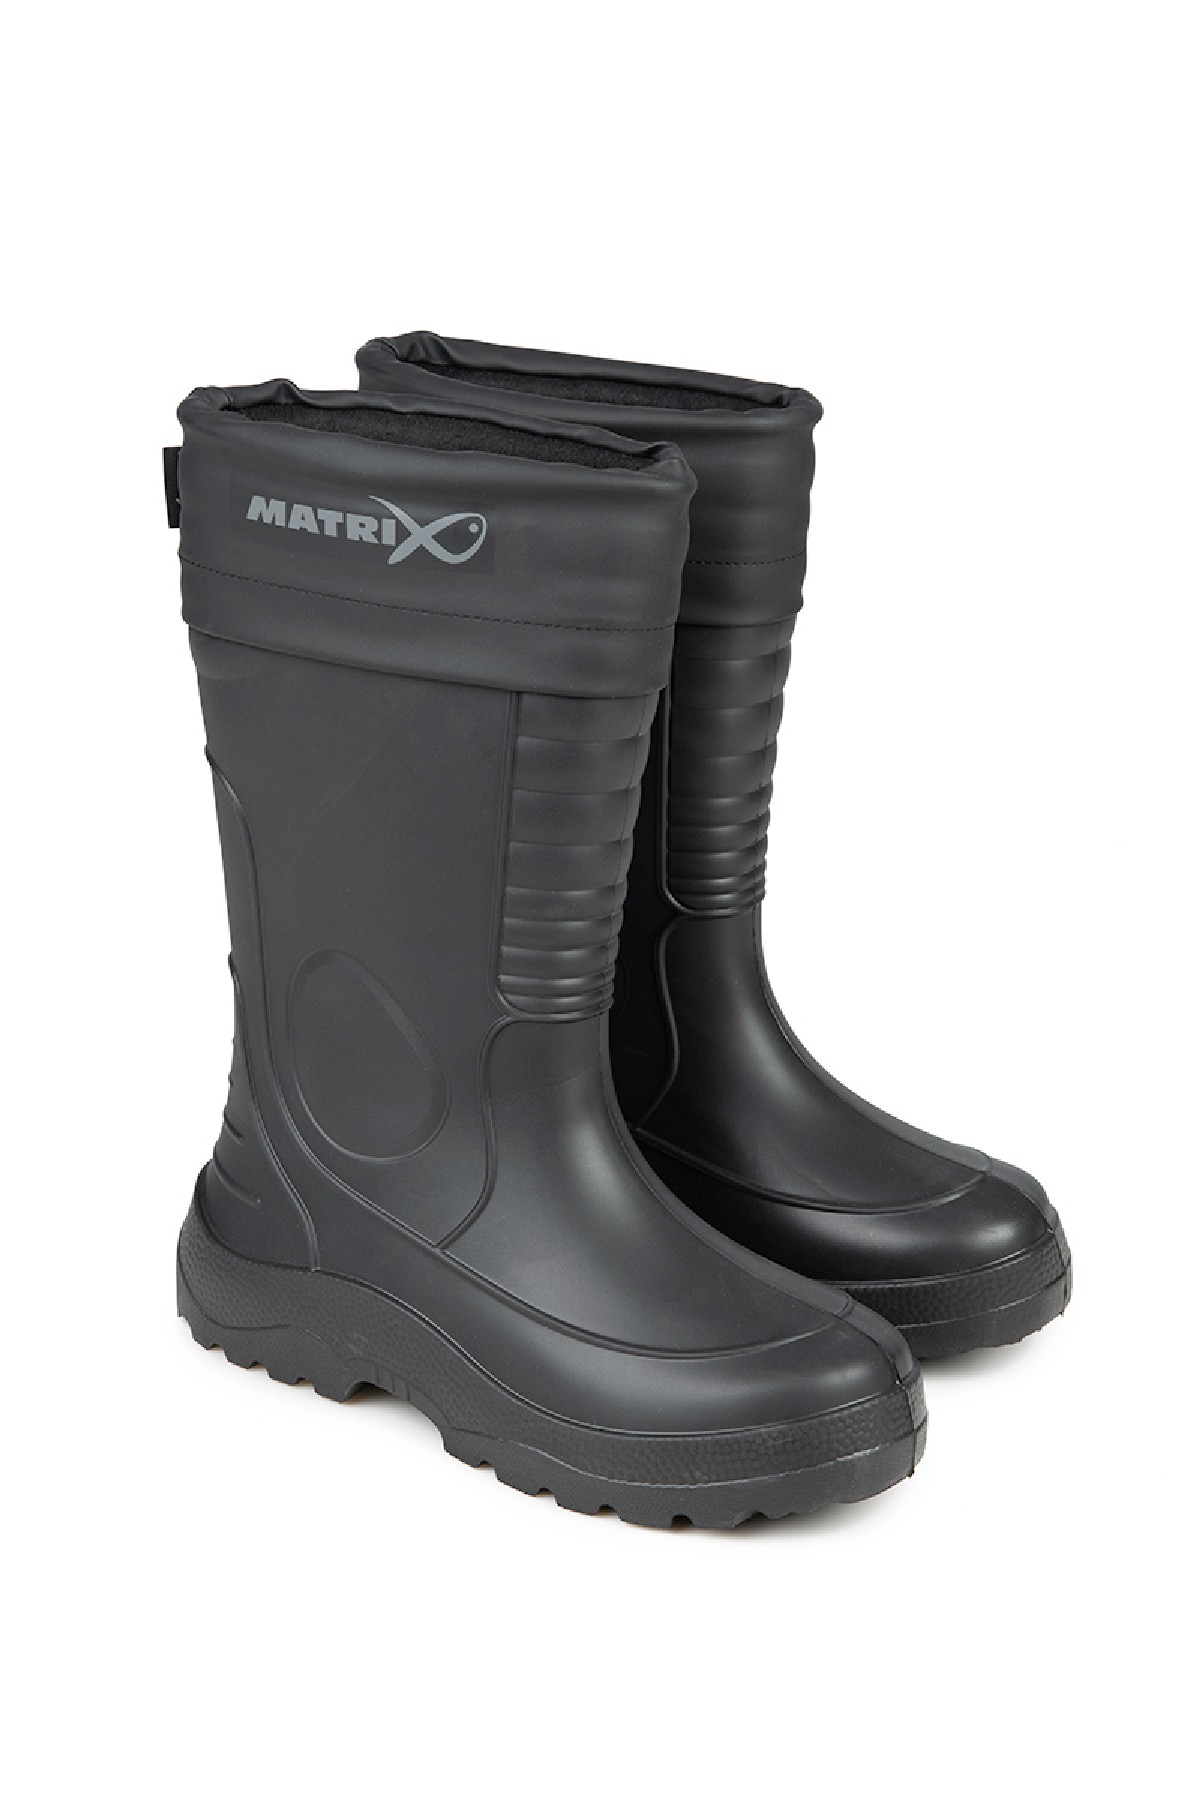 Matrix Thermal Eva Boots 44